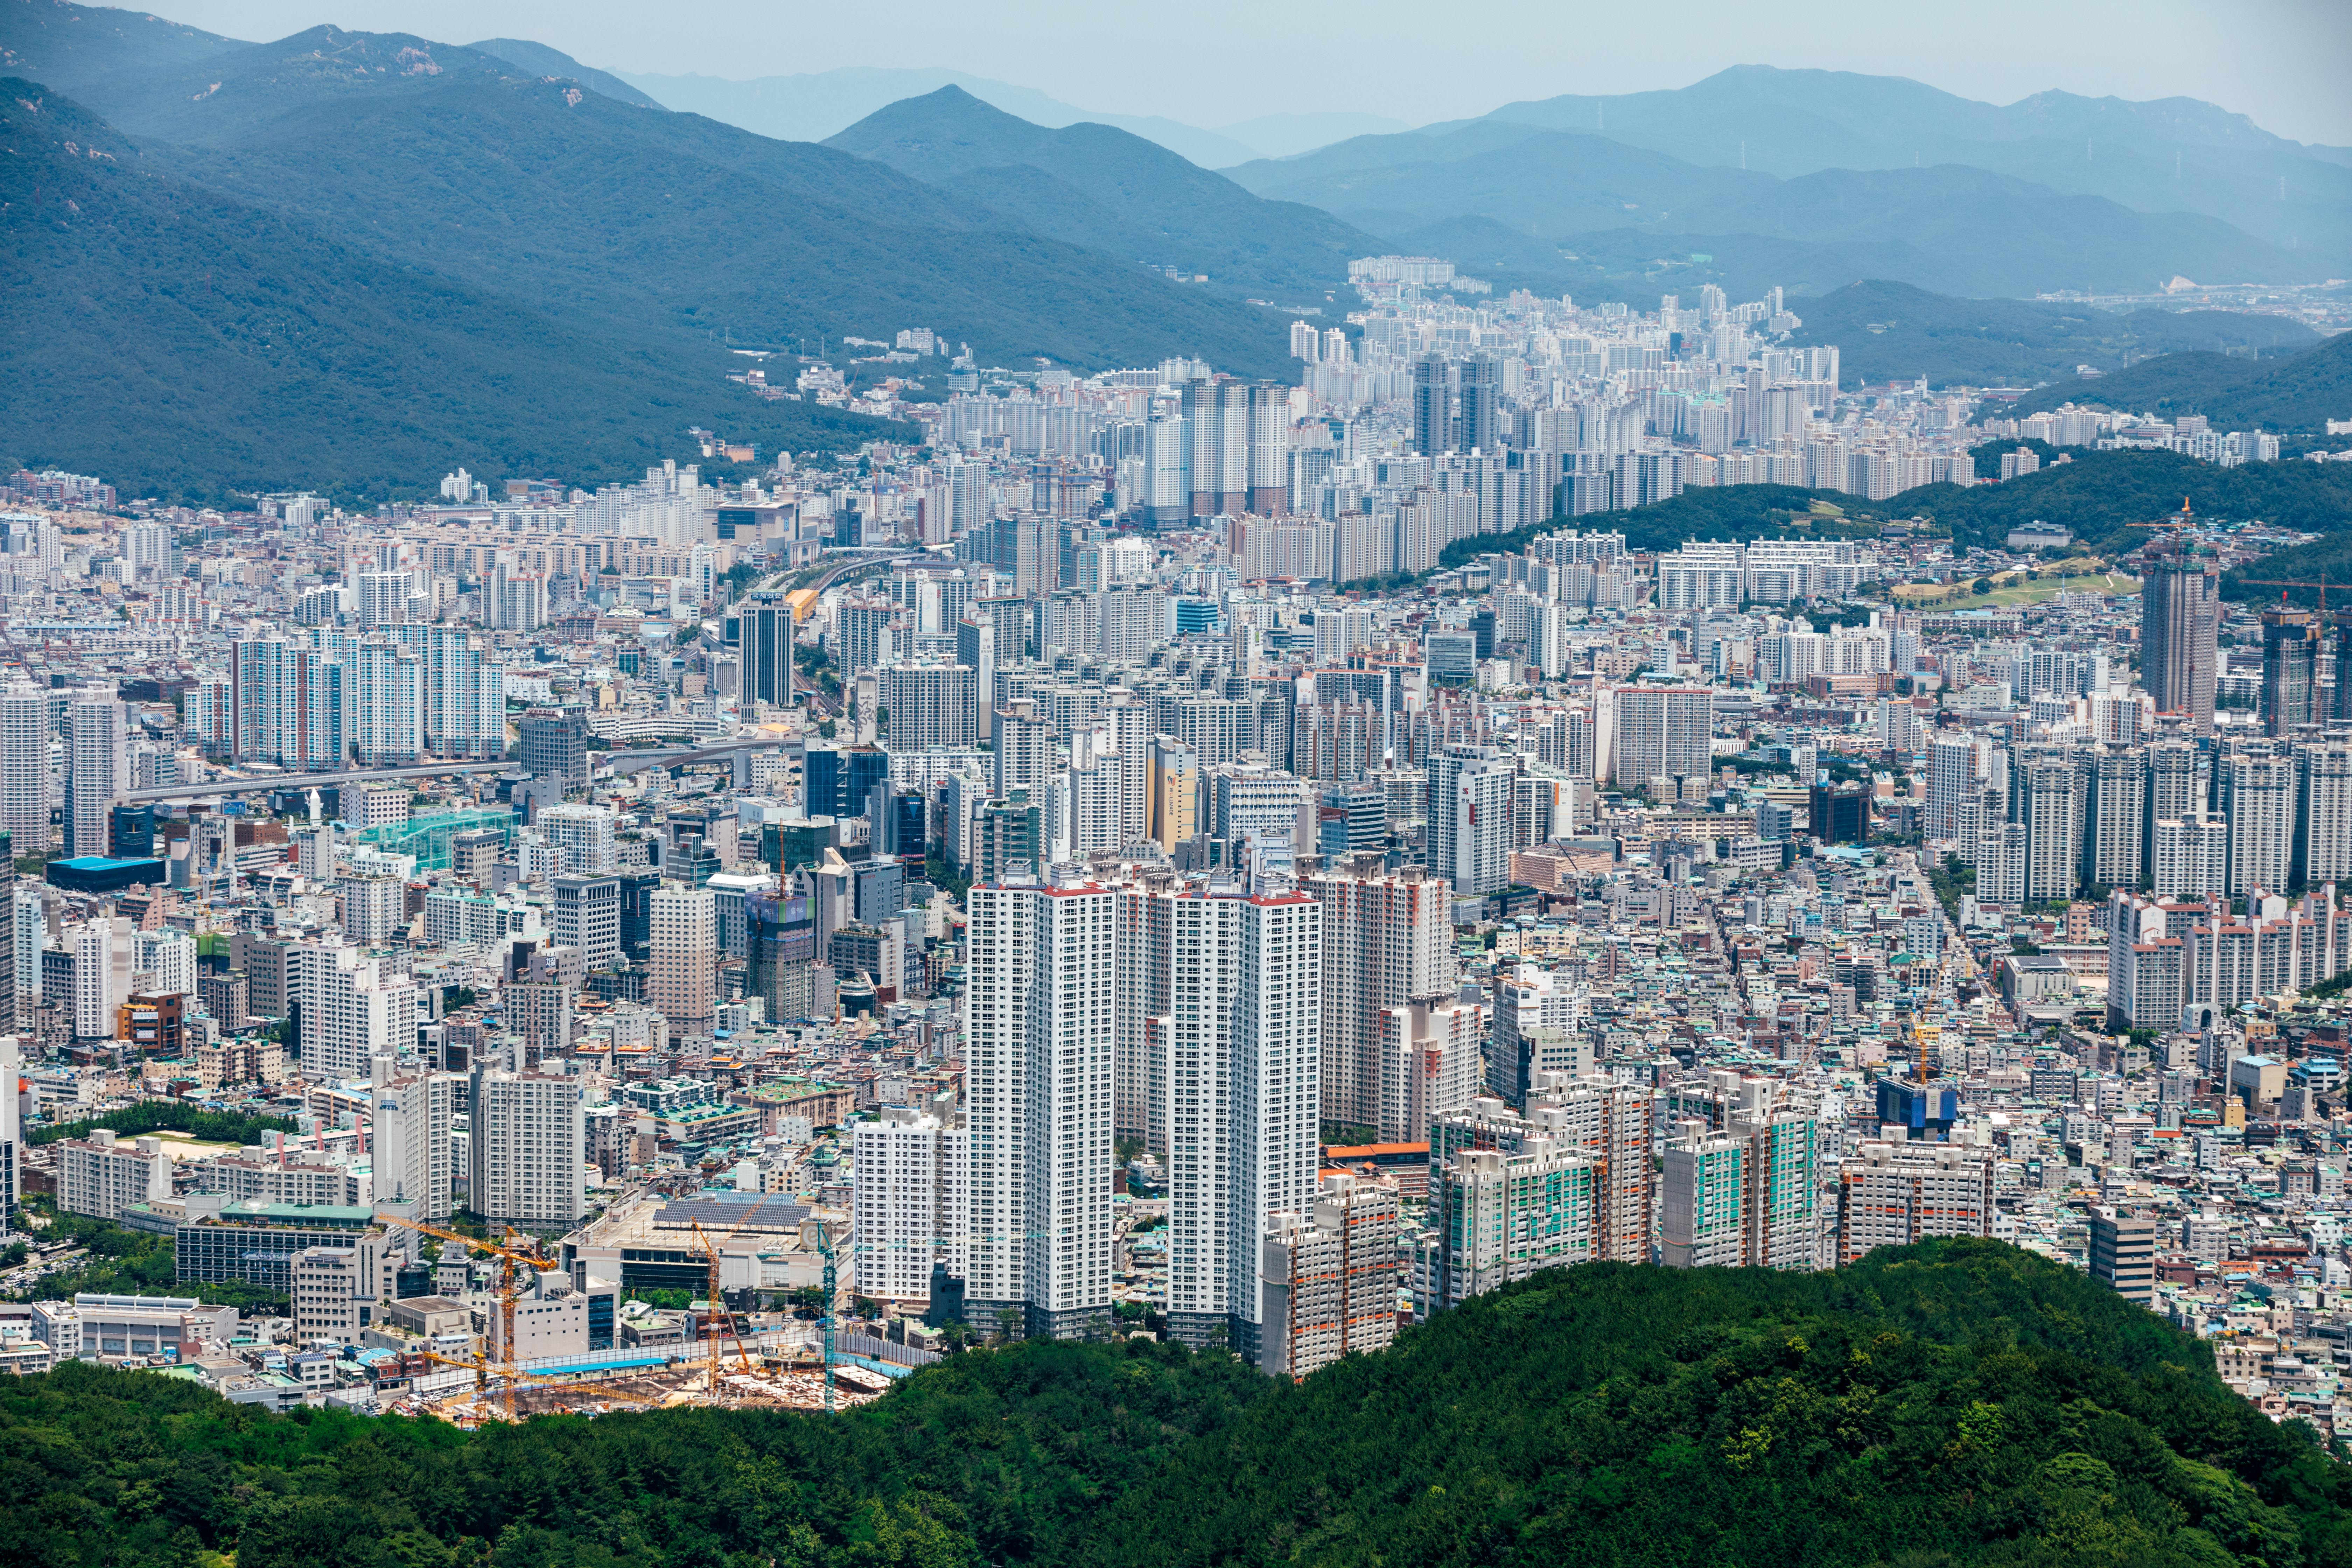 Image of Busan city